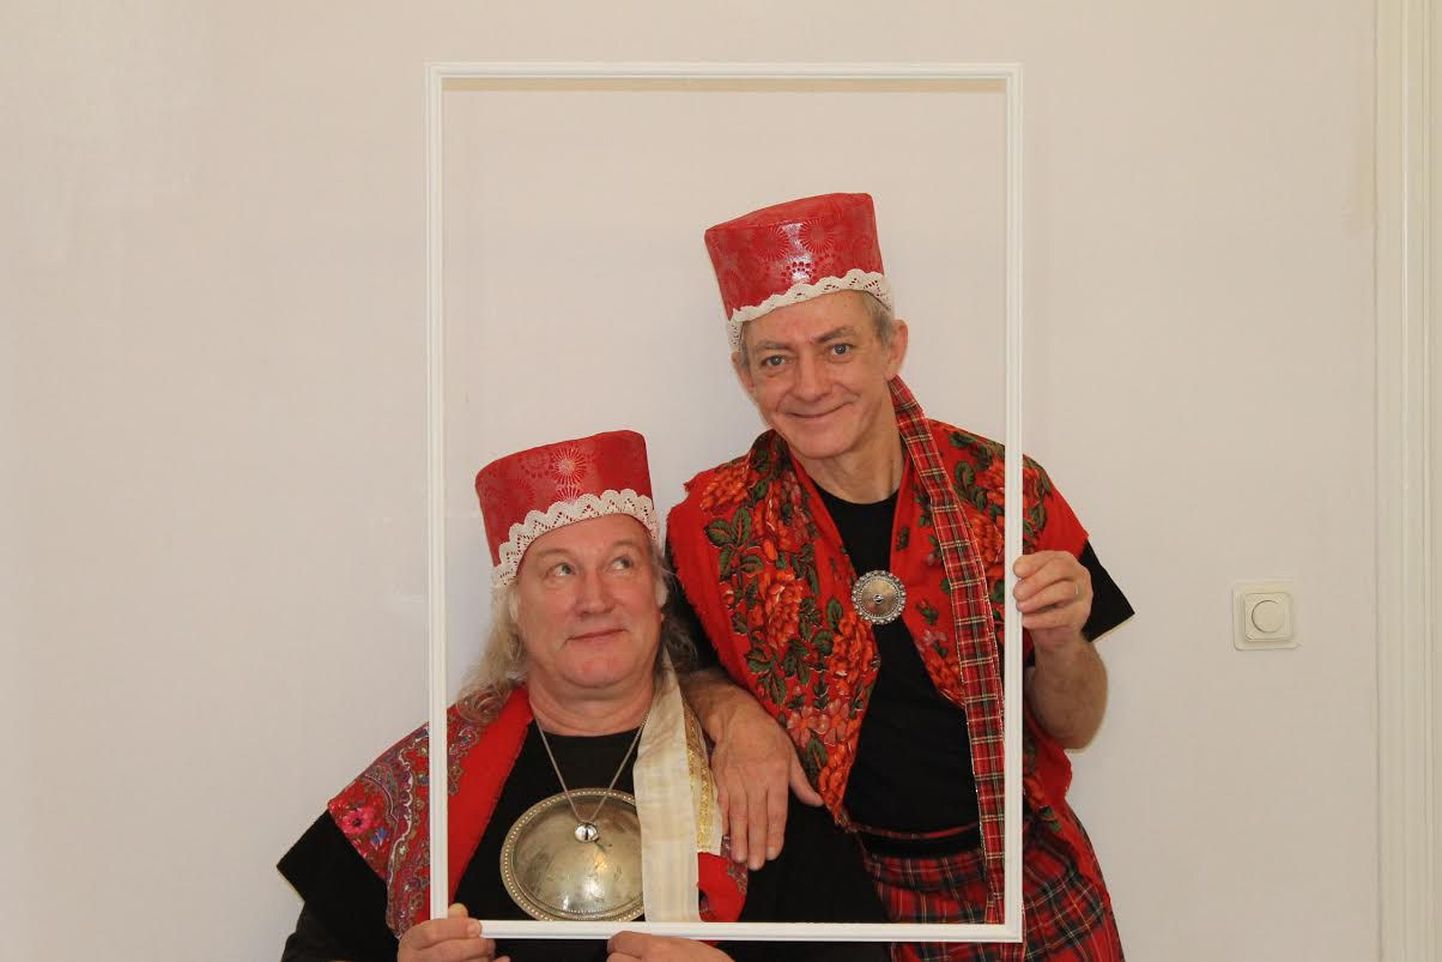 Täiskasvanutele mõeldud komöödiat "Punamütsikesed" saab näha Õisu mõisas 9. ja 19. juulil.